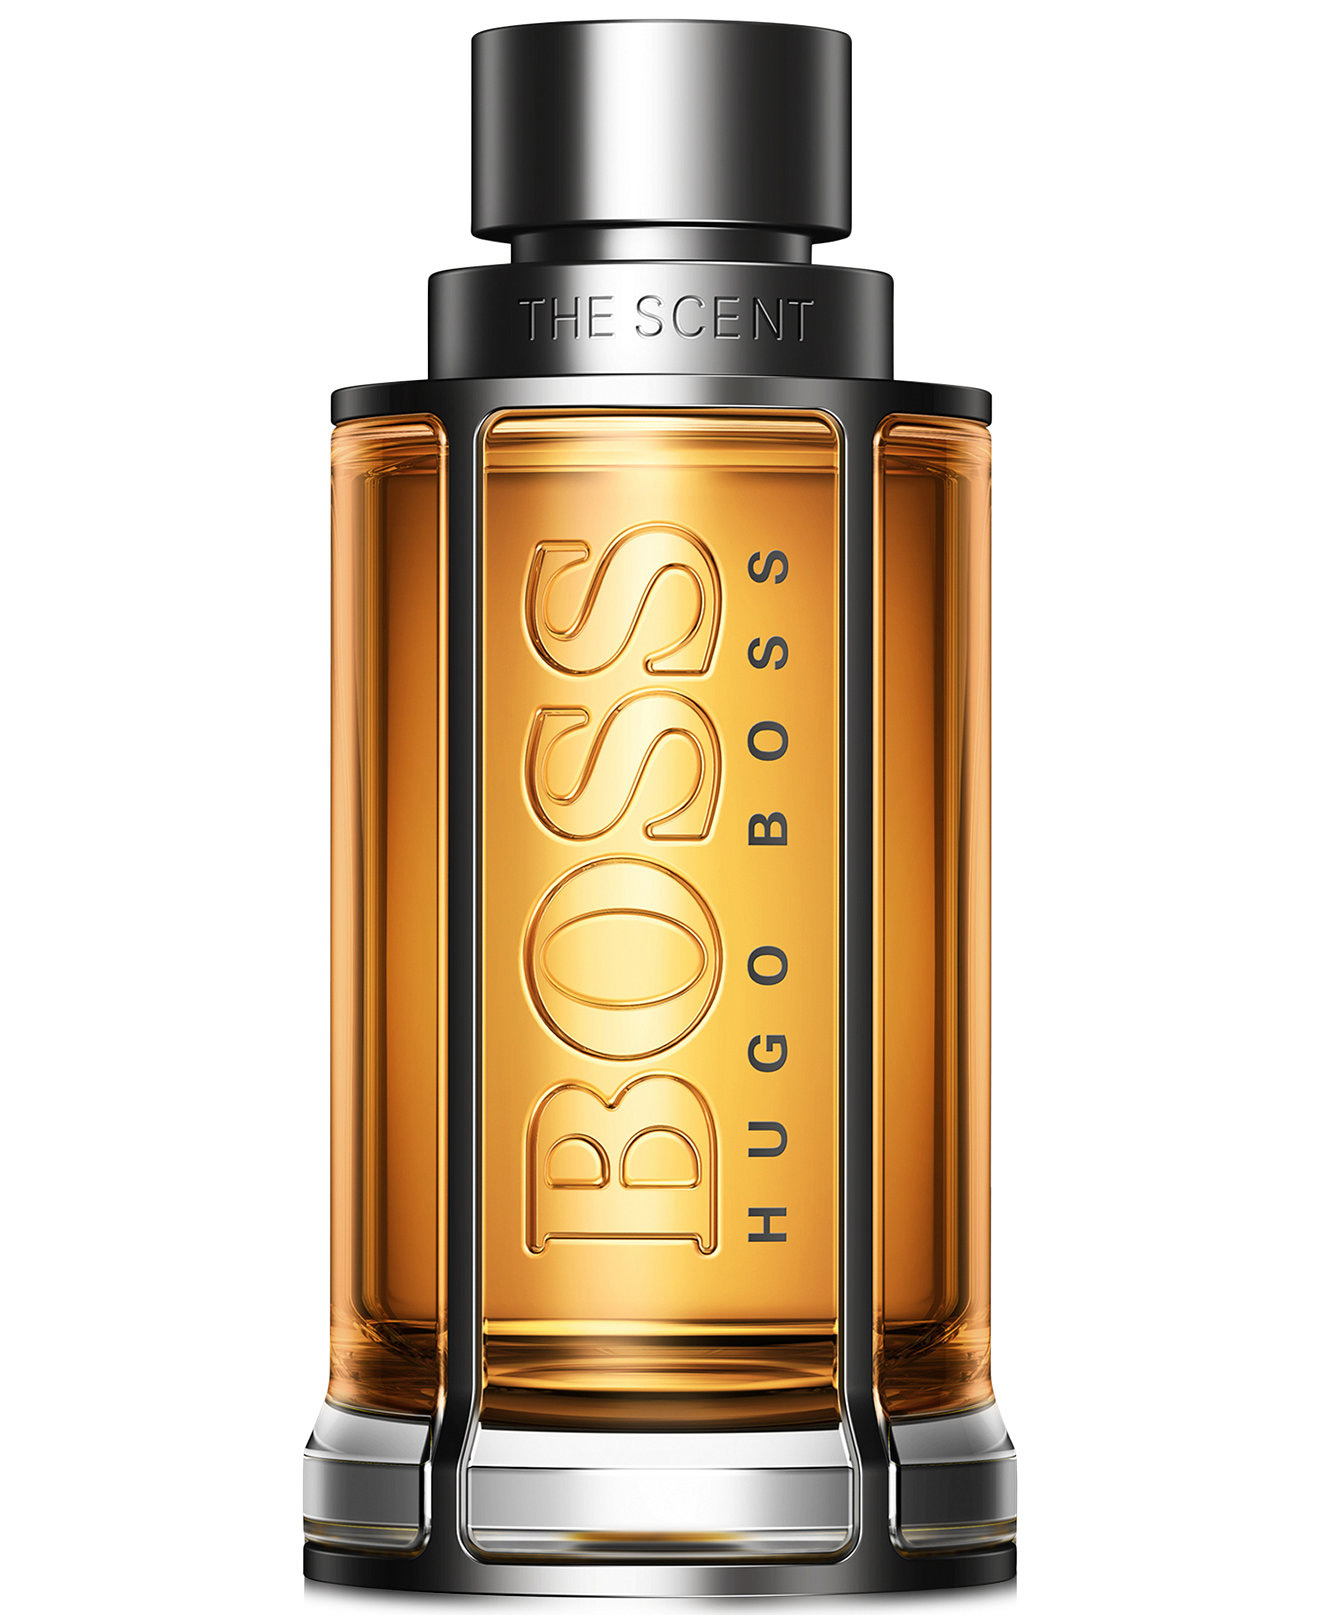 Boss The Scent Hugo Boss cologne - a new fragrance for men 2015